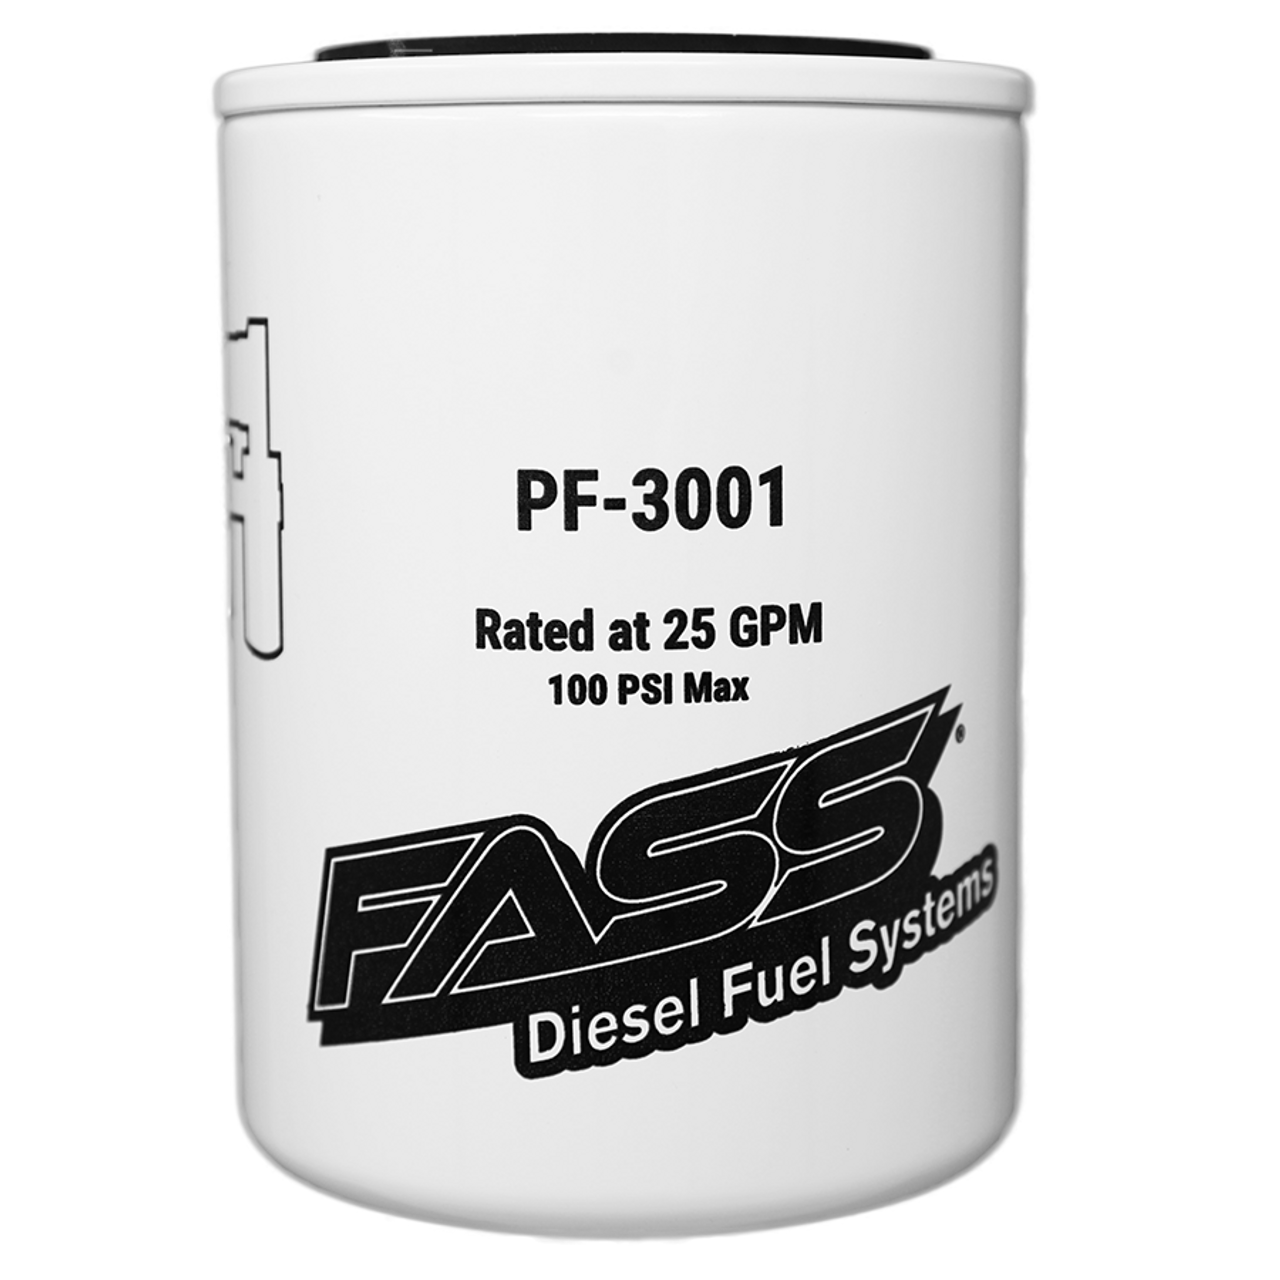 FASS 6.4L Powerstroke Particulate Filter